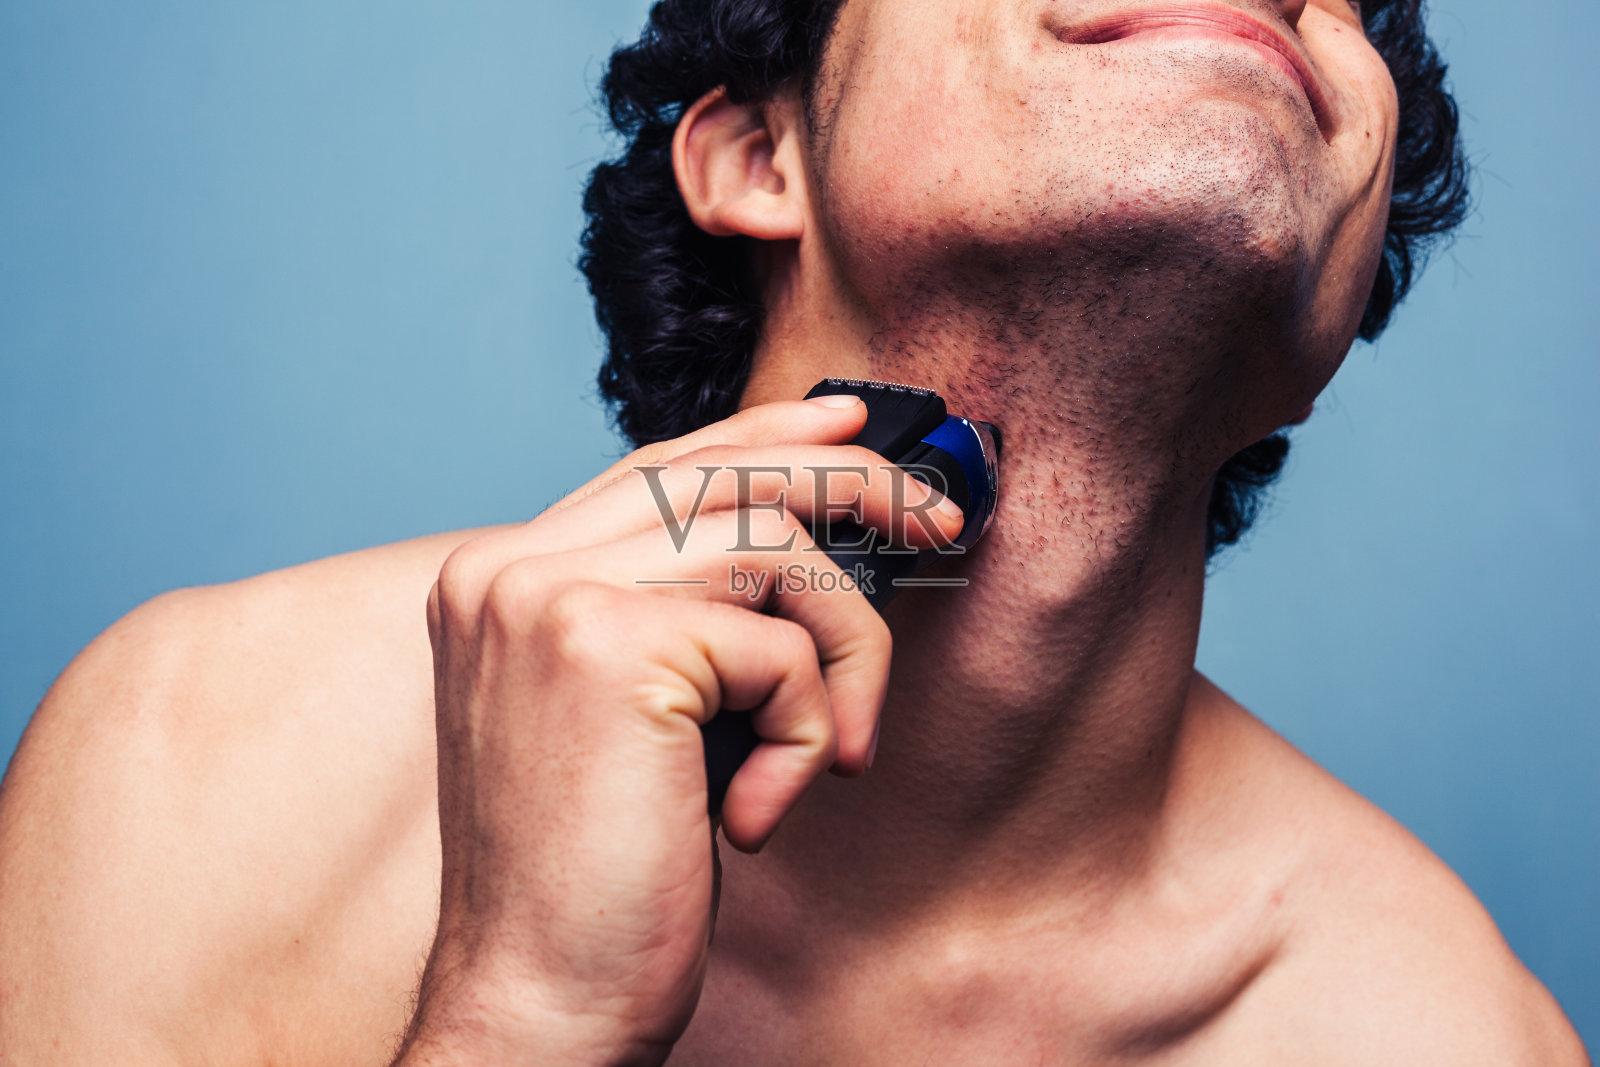 男人用电动剃须刀刮胡子照片摄影图片